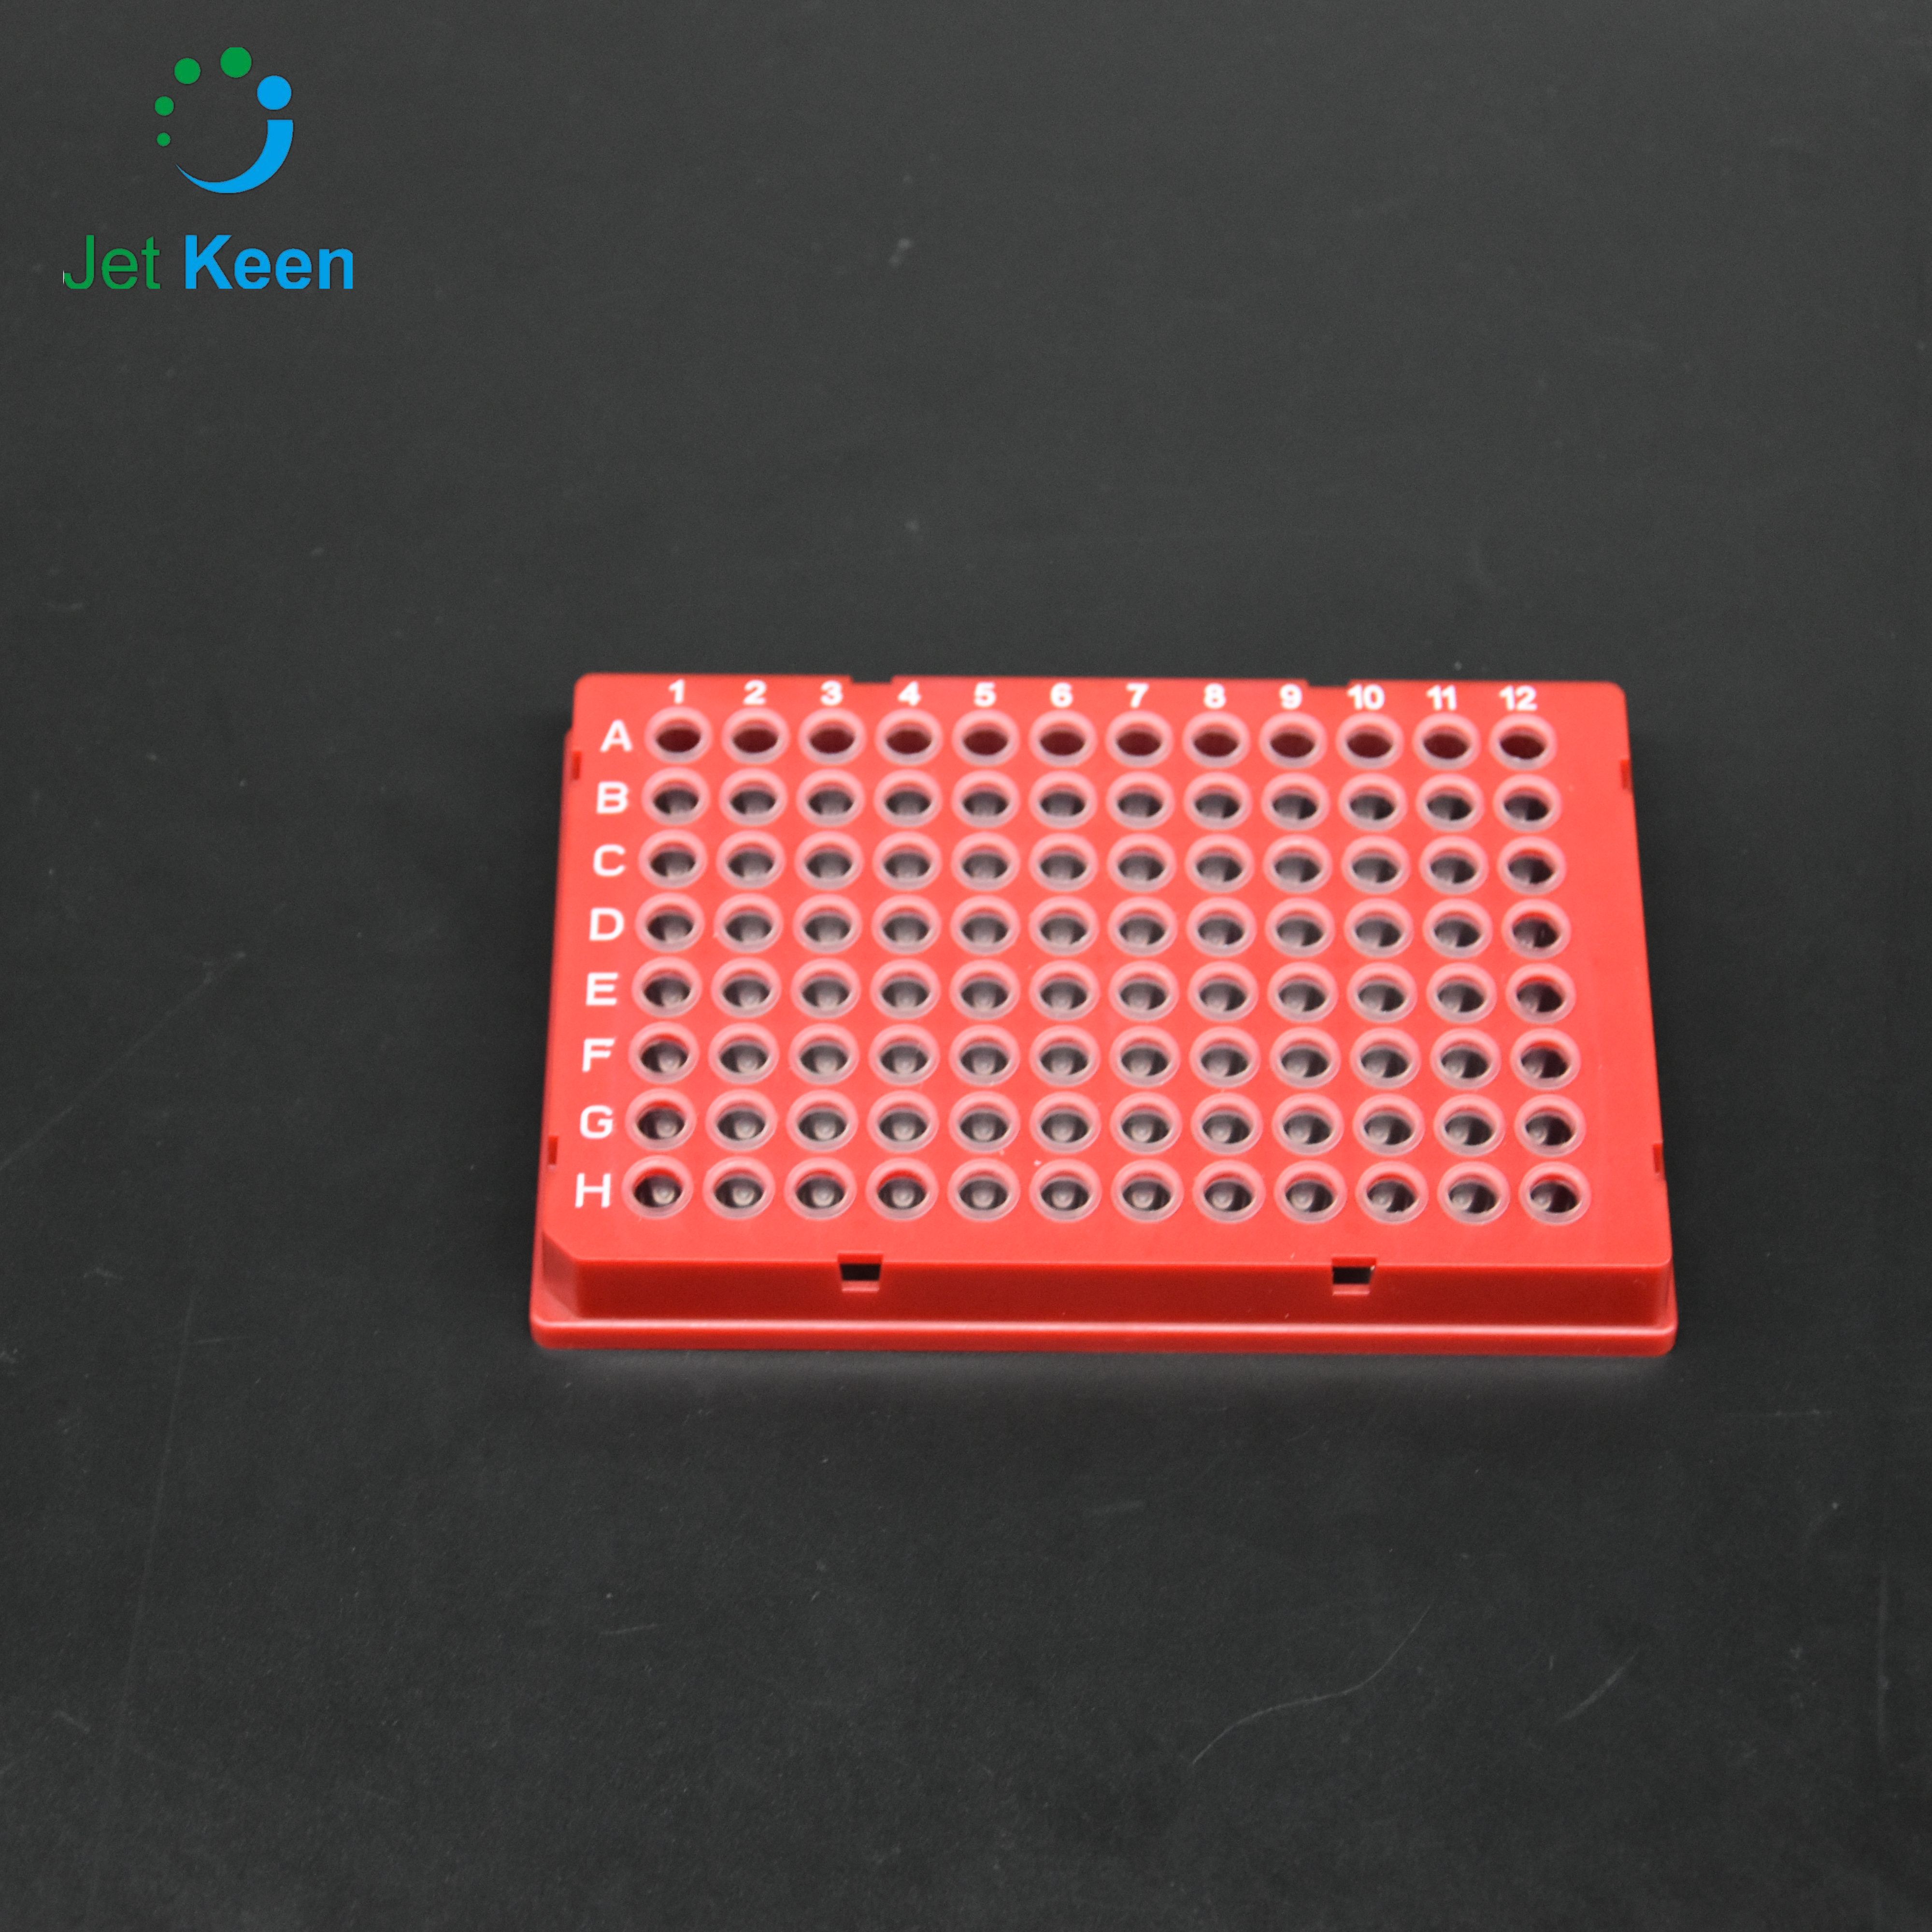 96孔 伯樂PCR板 全裙邊 紅色框 透明管